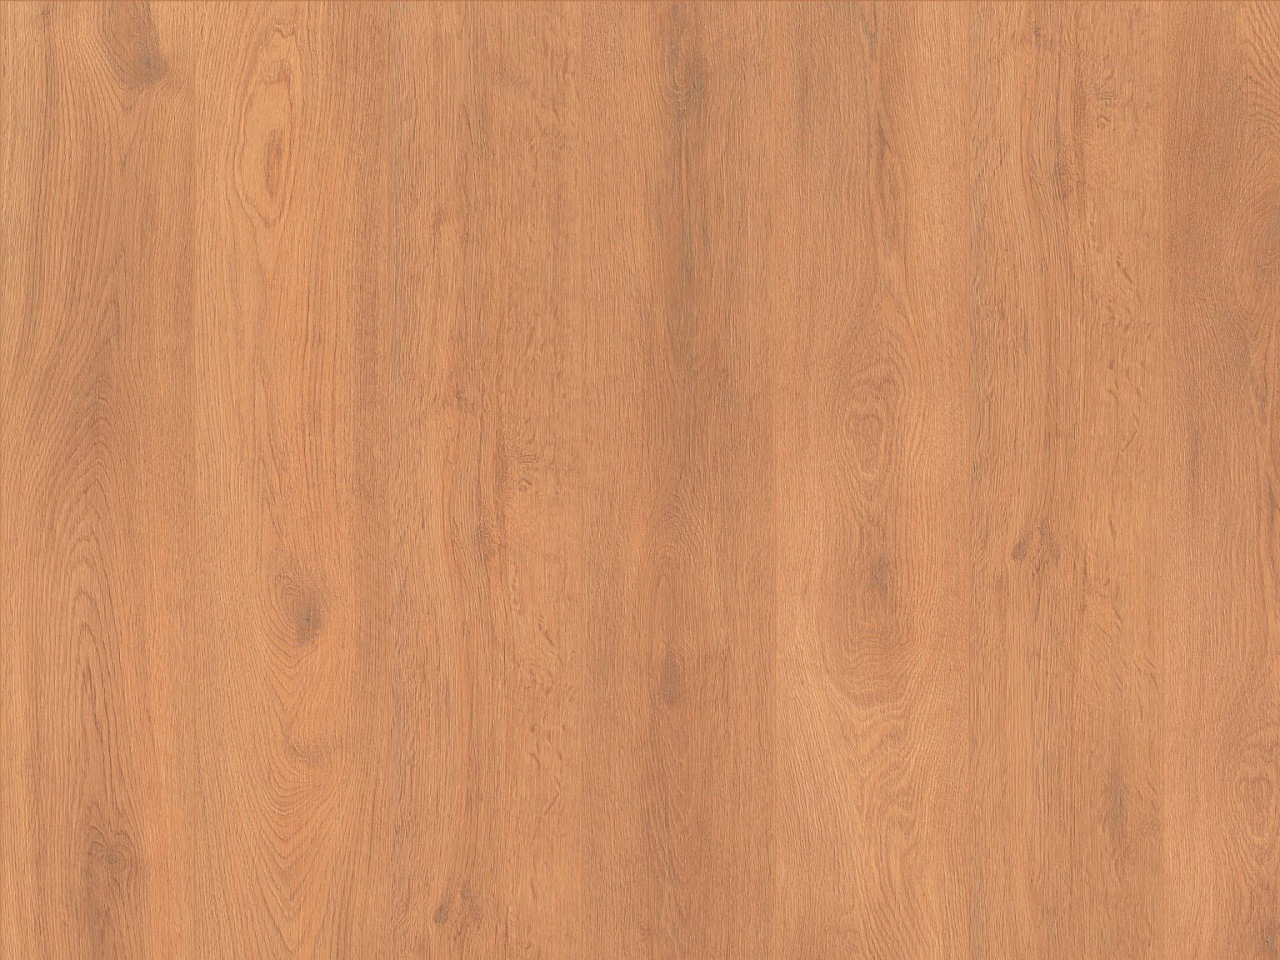 Laminatboden Oak Gallery Format M – Glossy Oak Brown, MV4181